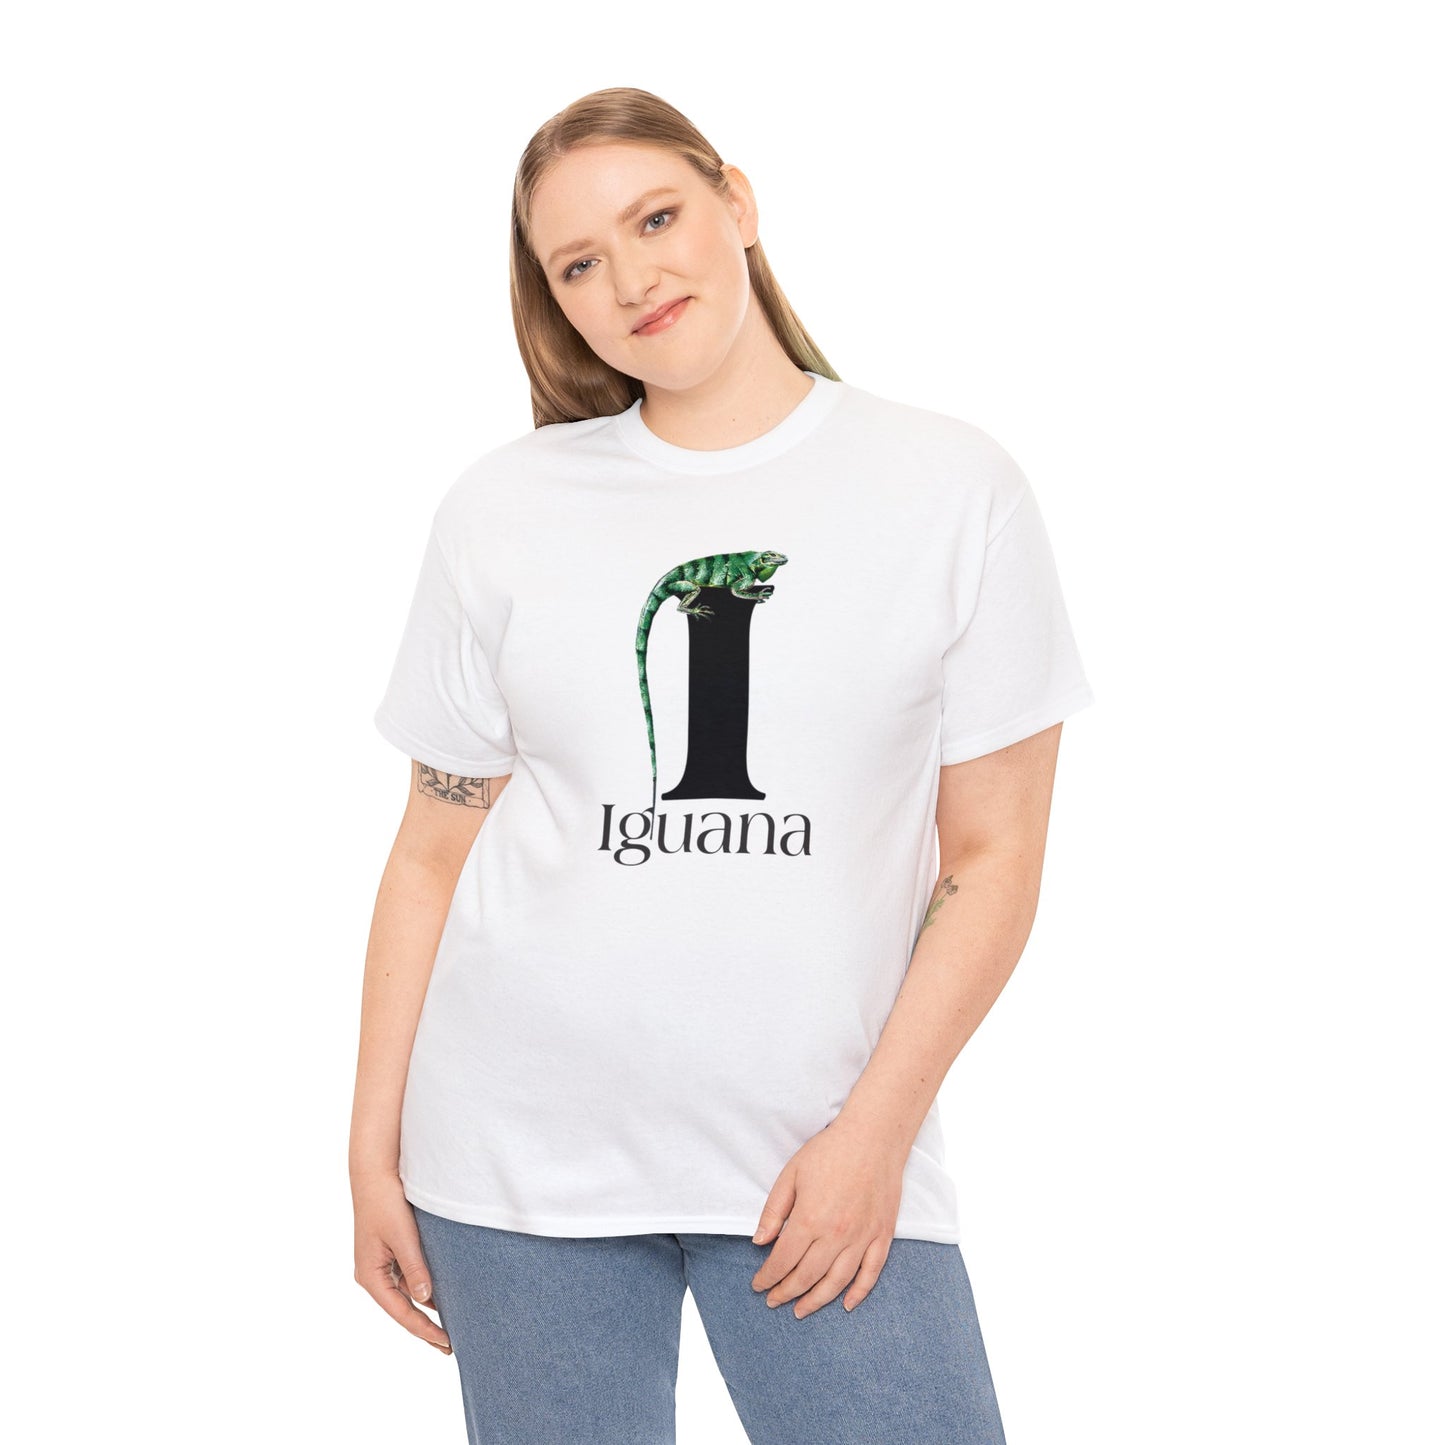 I is for Iguana, Iguana Perched on Letter I, Iguana Lovers, Iguana Drawing T-Shirt, animal t-shirt